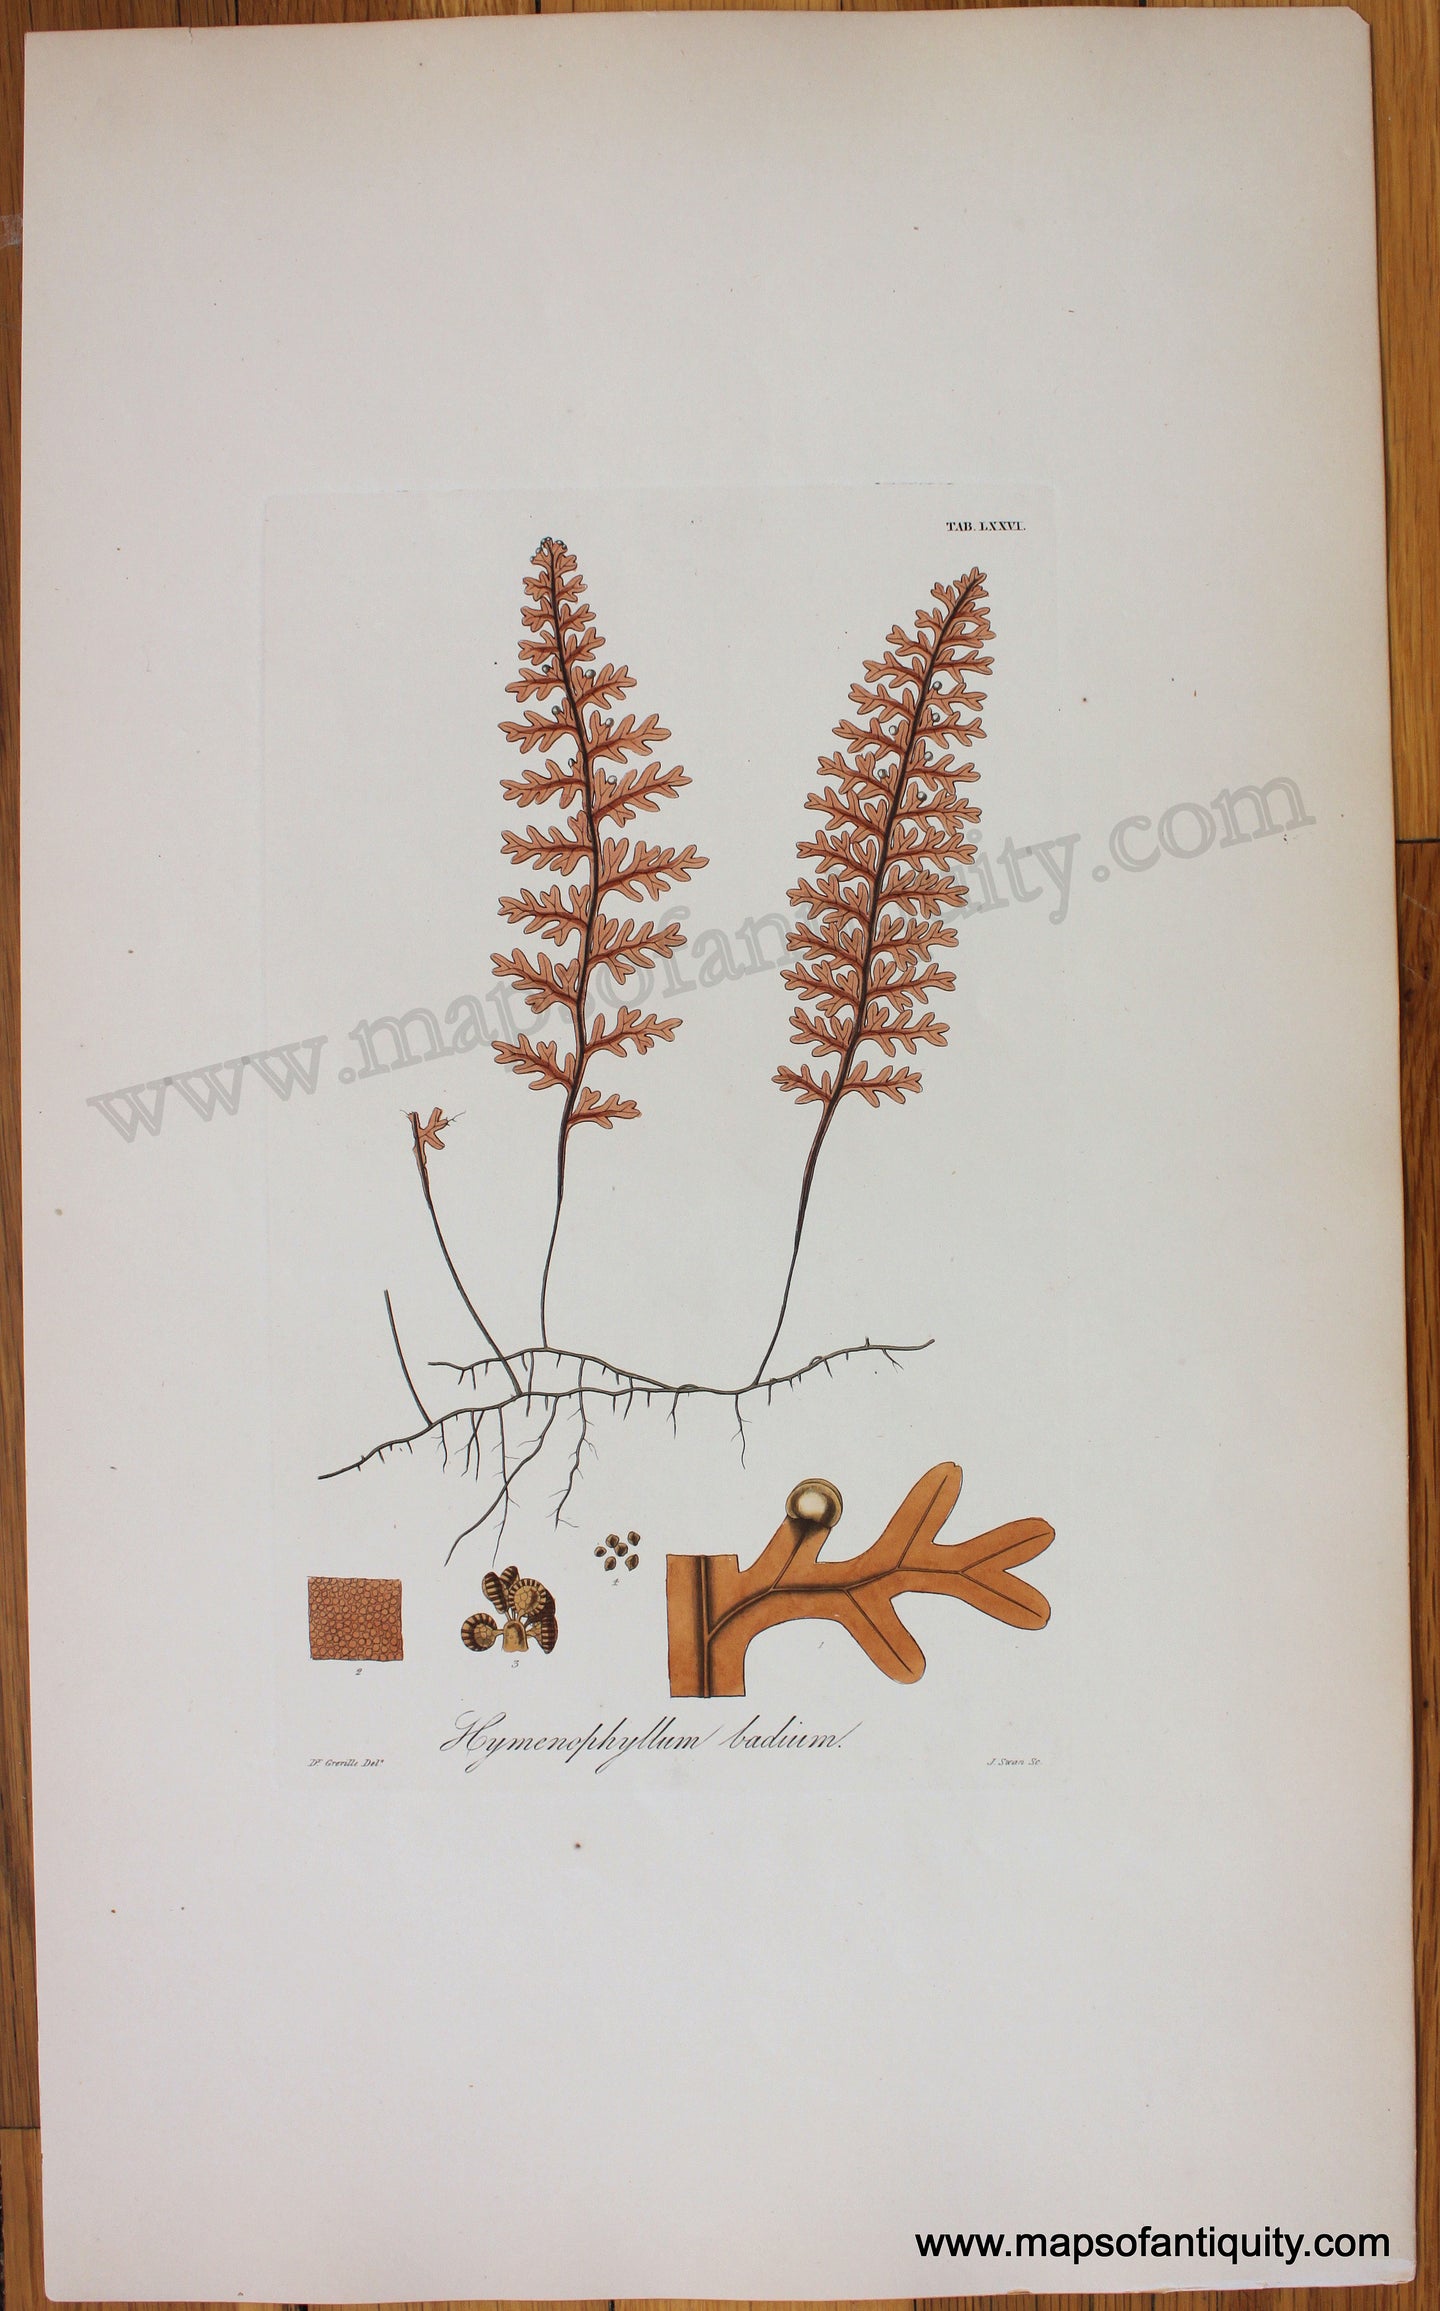 Antique-Botanical-Print-Hymenophyllum-badium-1831-Hooker-Botanical--1800s-19th-century-Maps-of-Antiquity